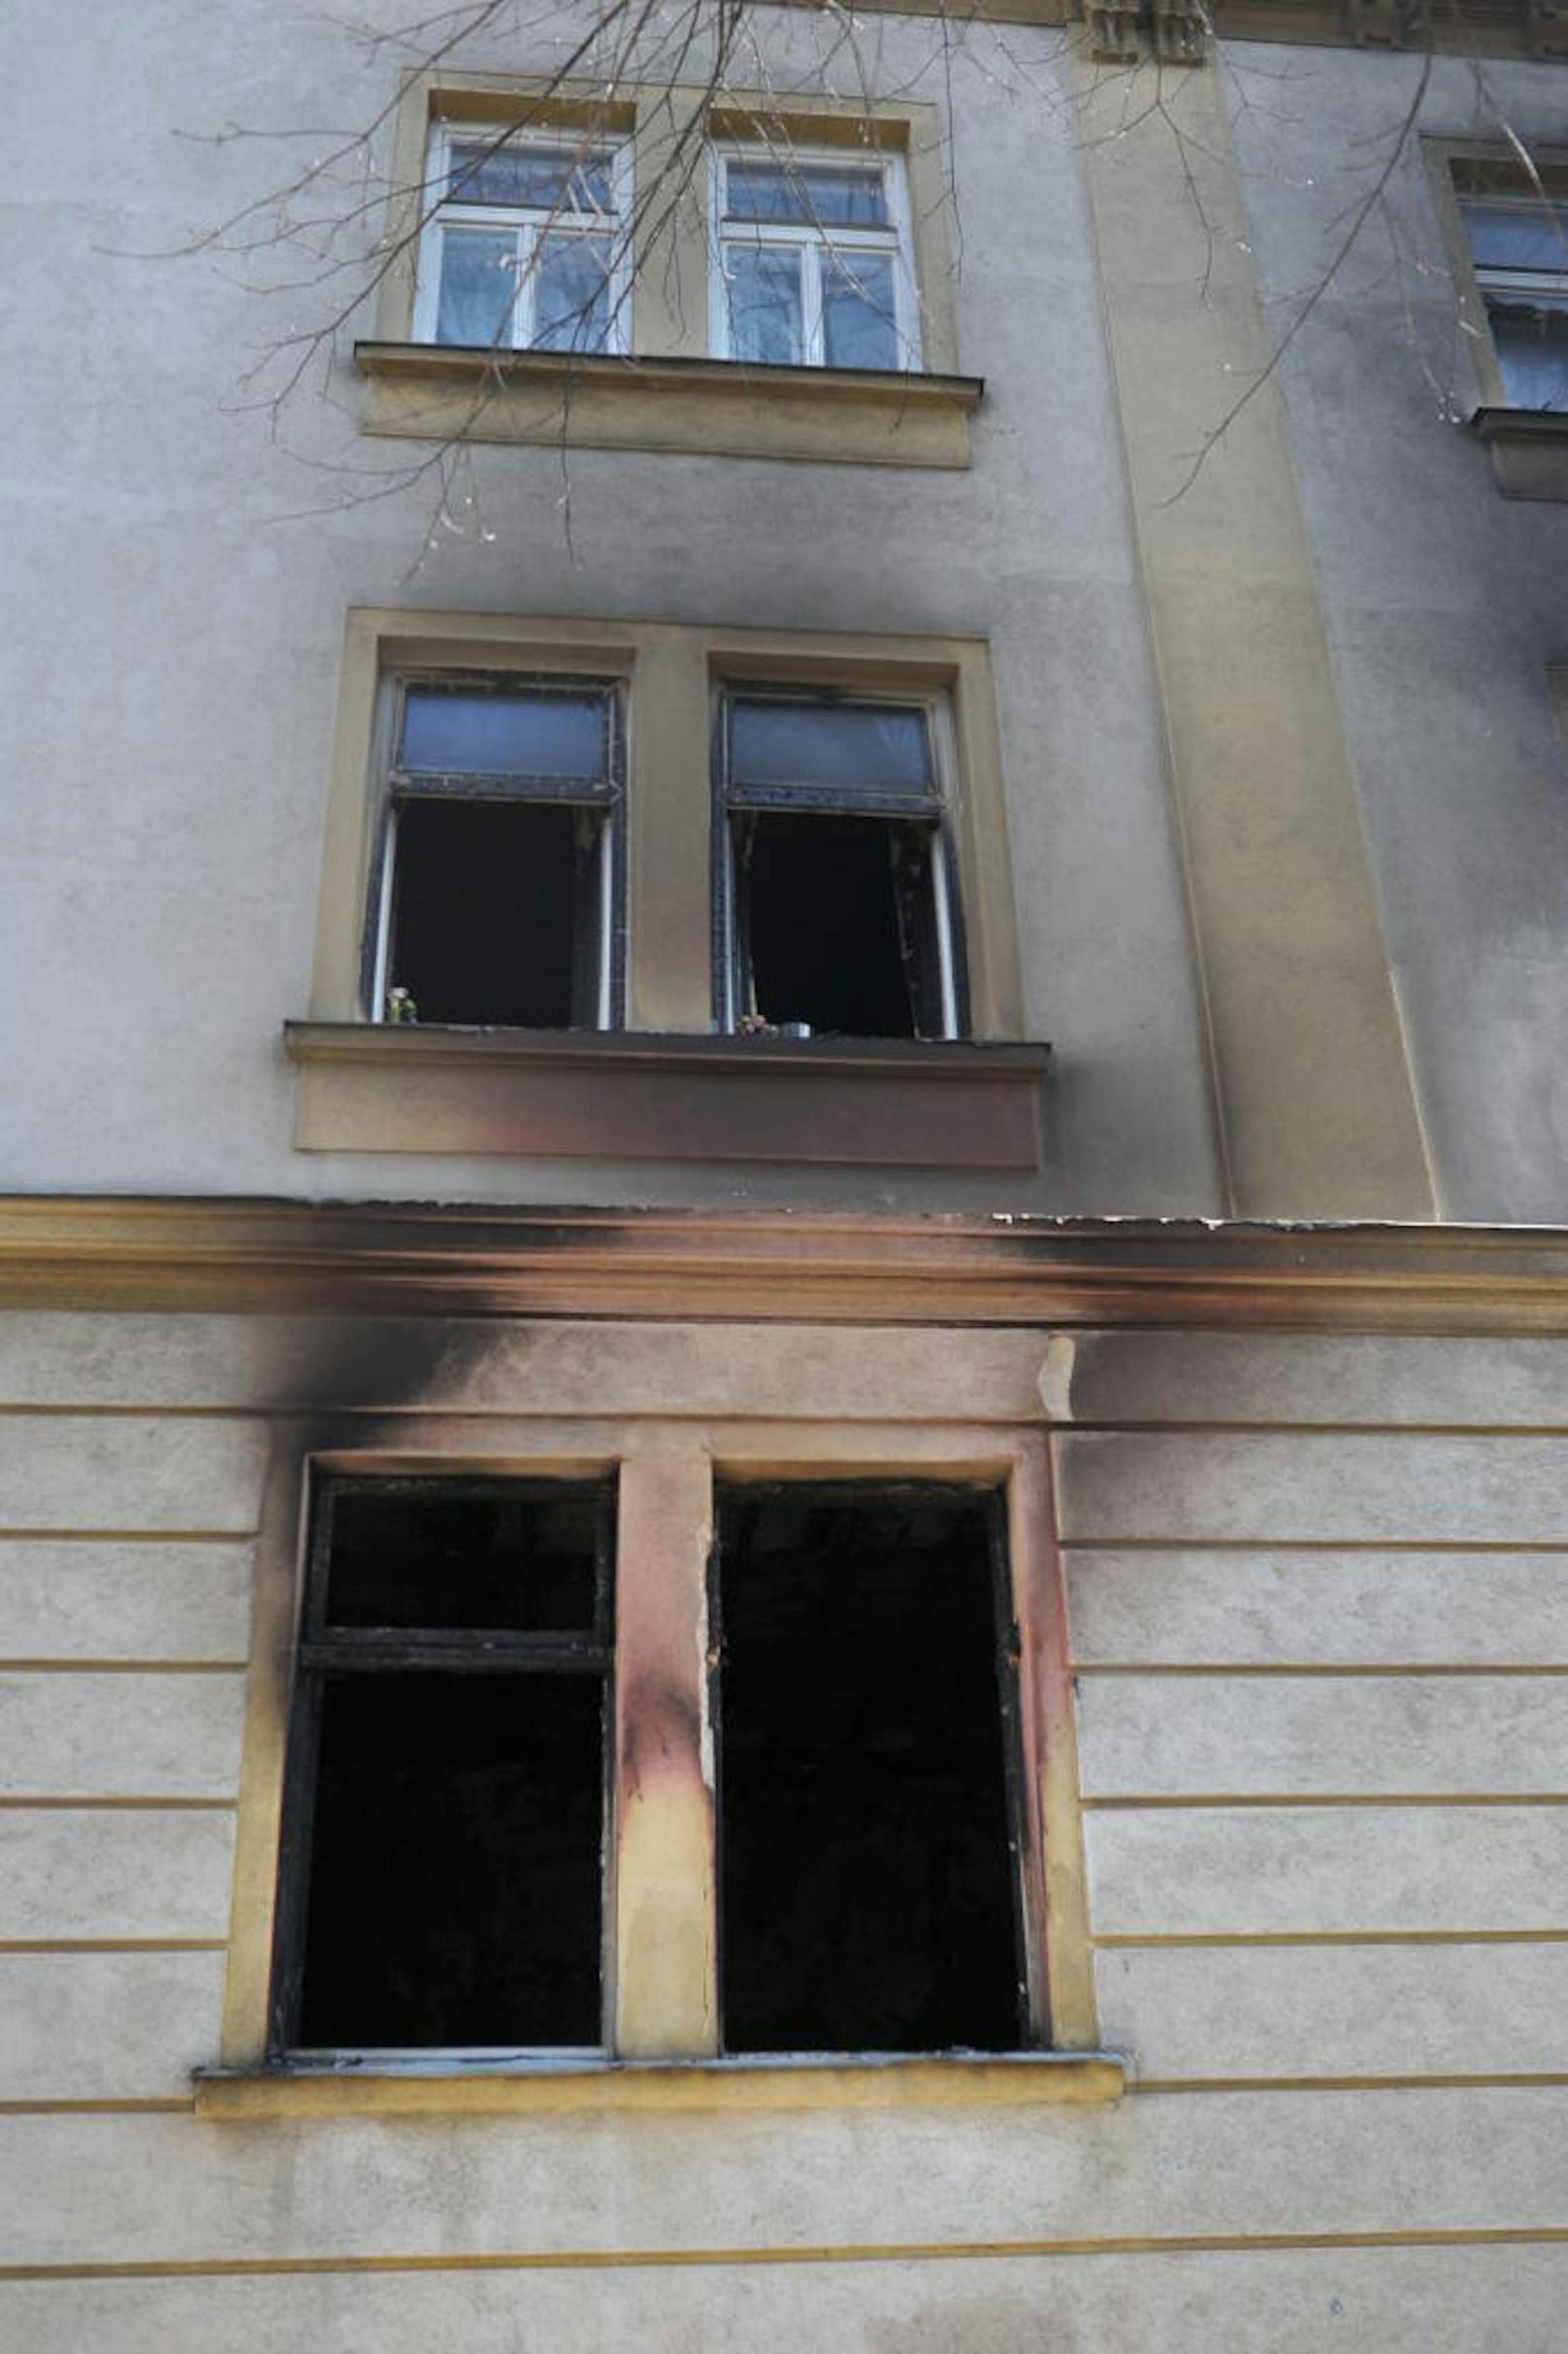 Der Brand in der Wiener Laskegasse - bei der folgenden Explosion starb eine Person, drei wurden verletzt - war kein Unfall. Das Haus bleibt wegen Einsturzgefahr bis auf weiteres gesperrt. 20 Personen kamen bei Verwandten unter, für einen Mieter wird noch nach einer Unterkunft gesucht.